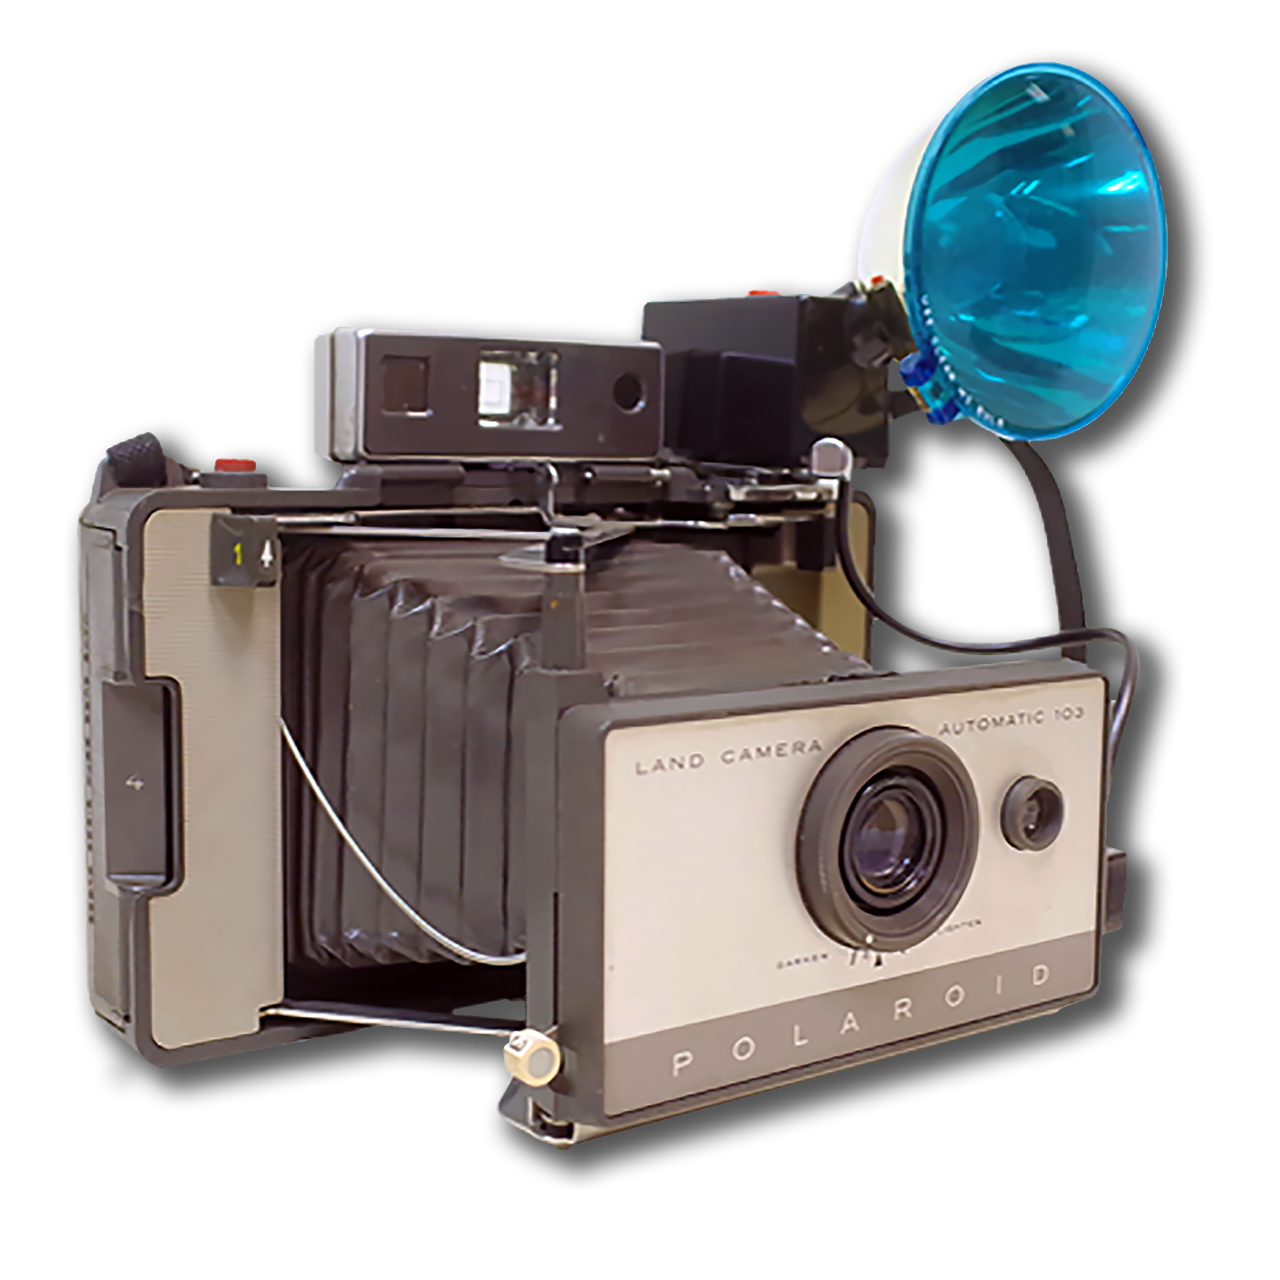 N-1280x1280px-Polaroid-Automatic-103-vWA24